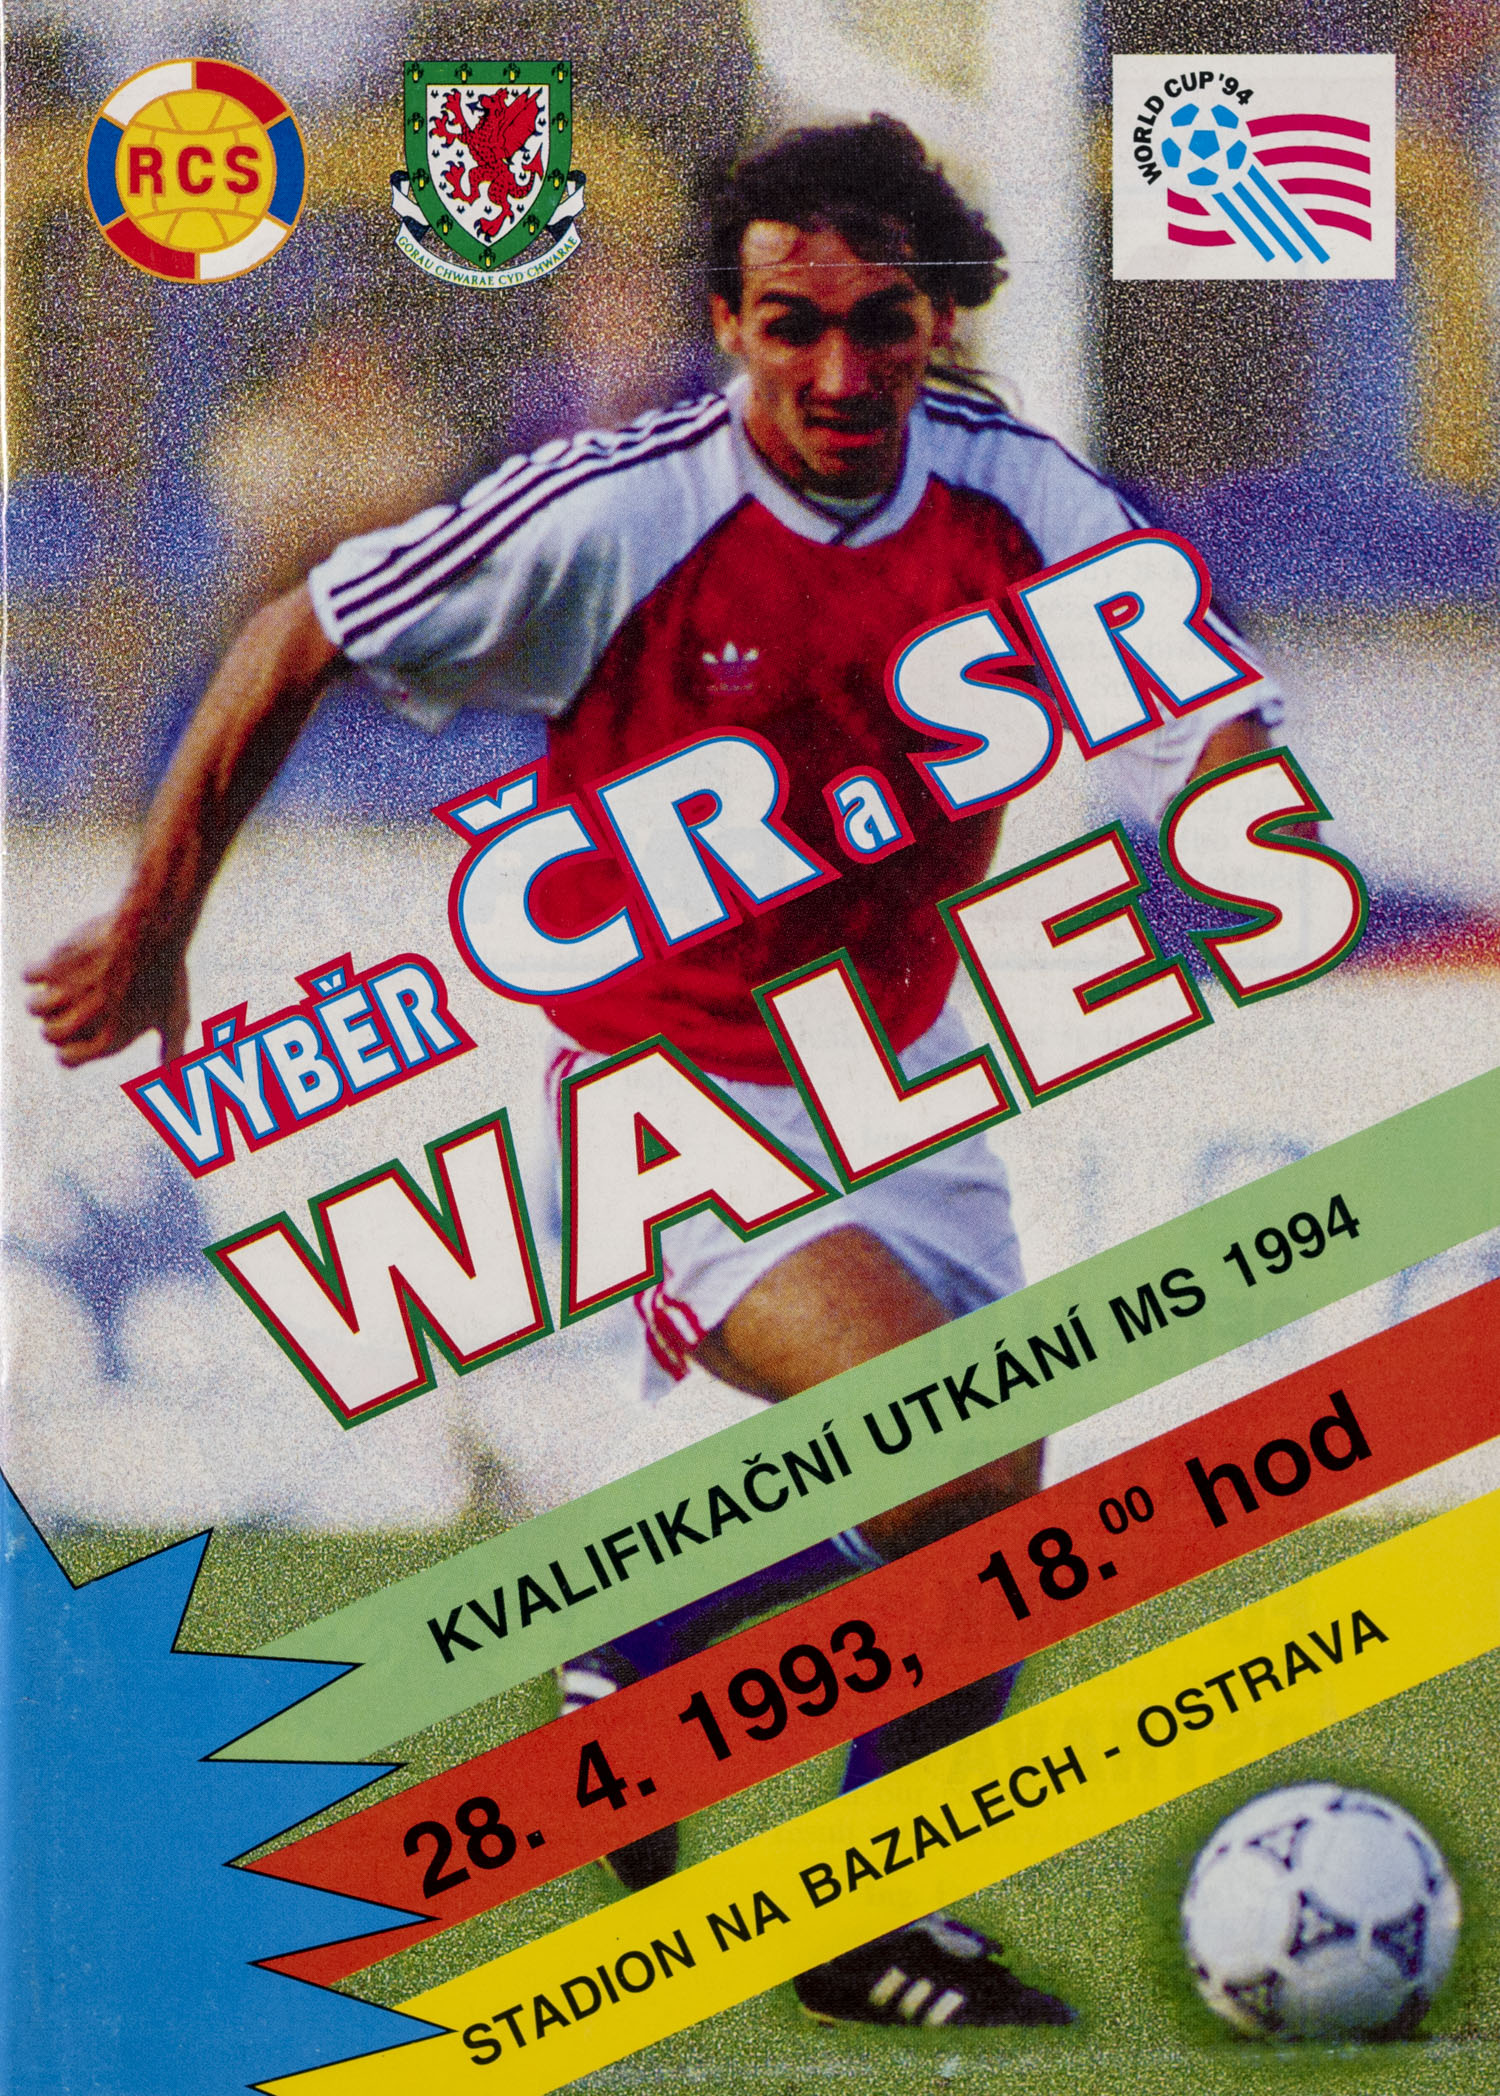 Program výběr ČR a SR vs. Wales, 1993